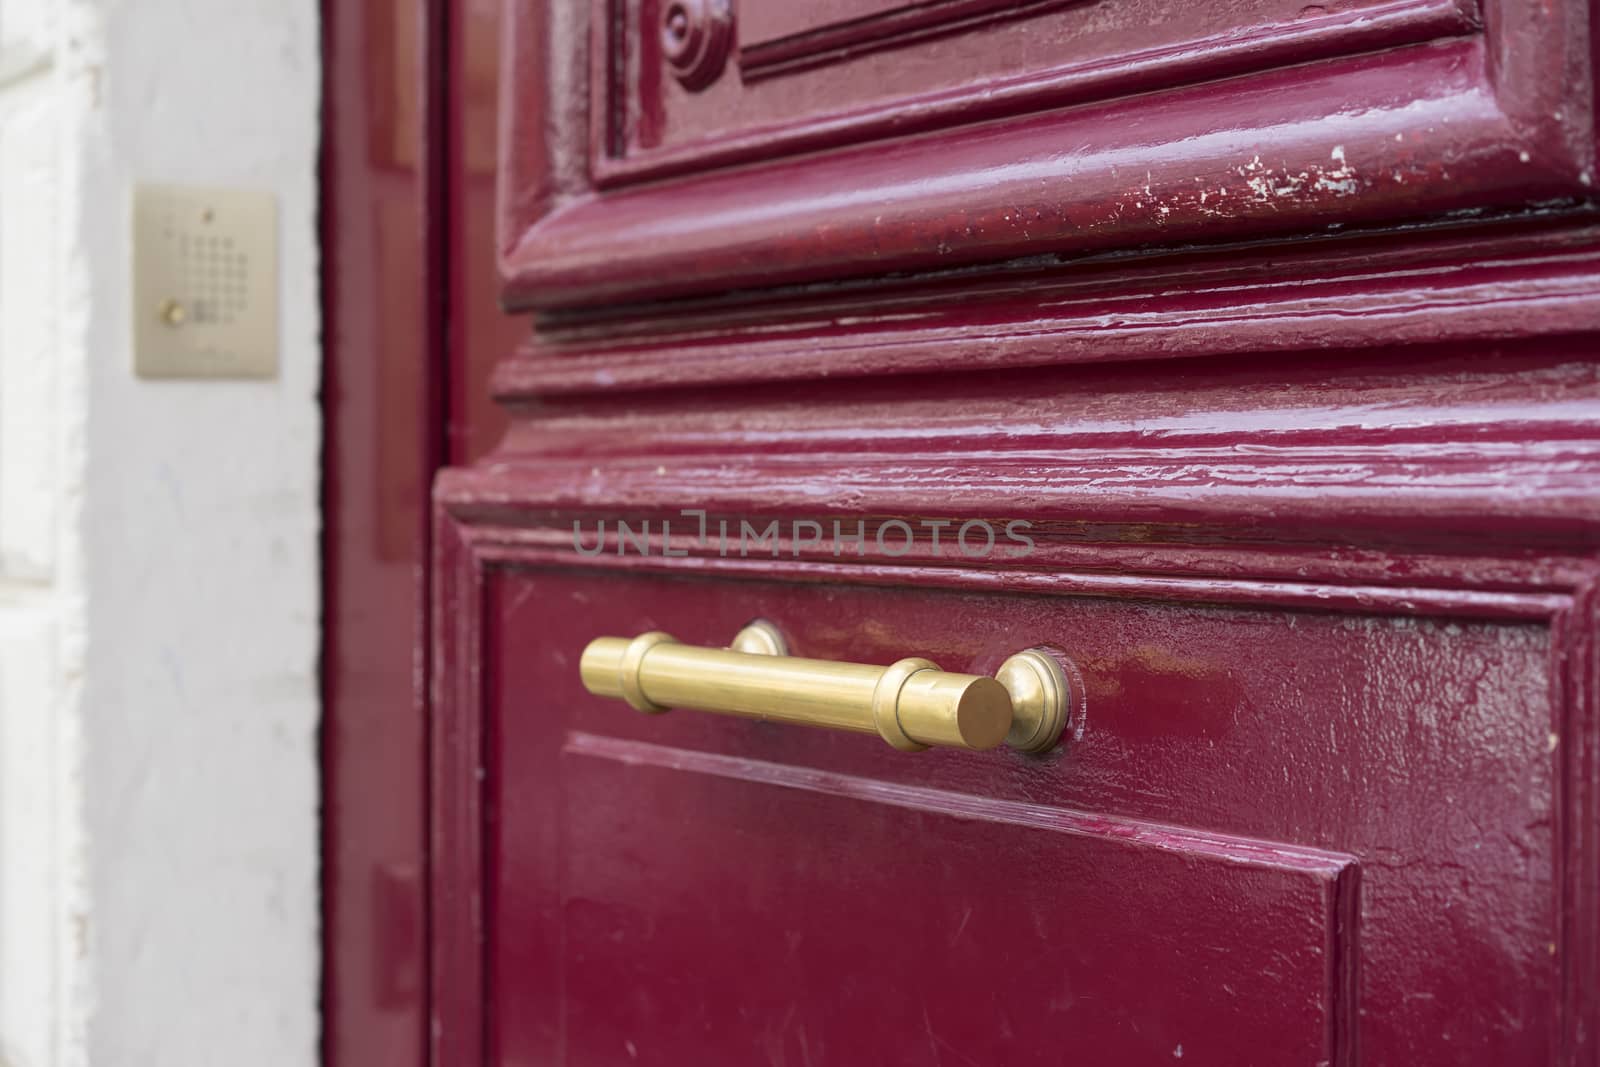 Old brass door handle on sturdy old textured maroon red wooden door